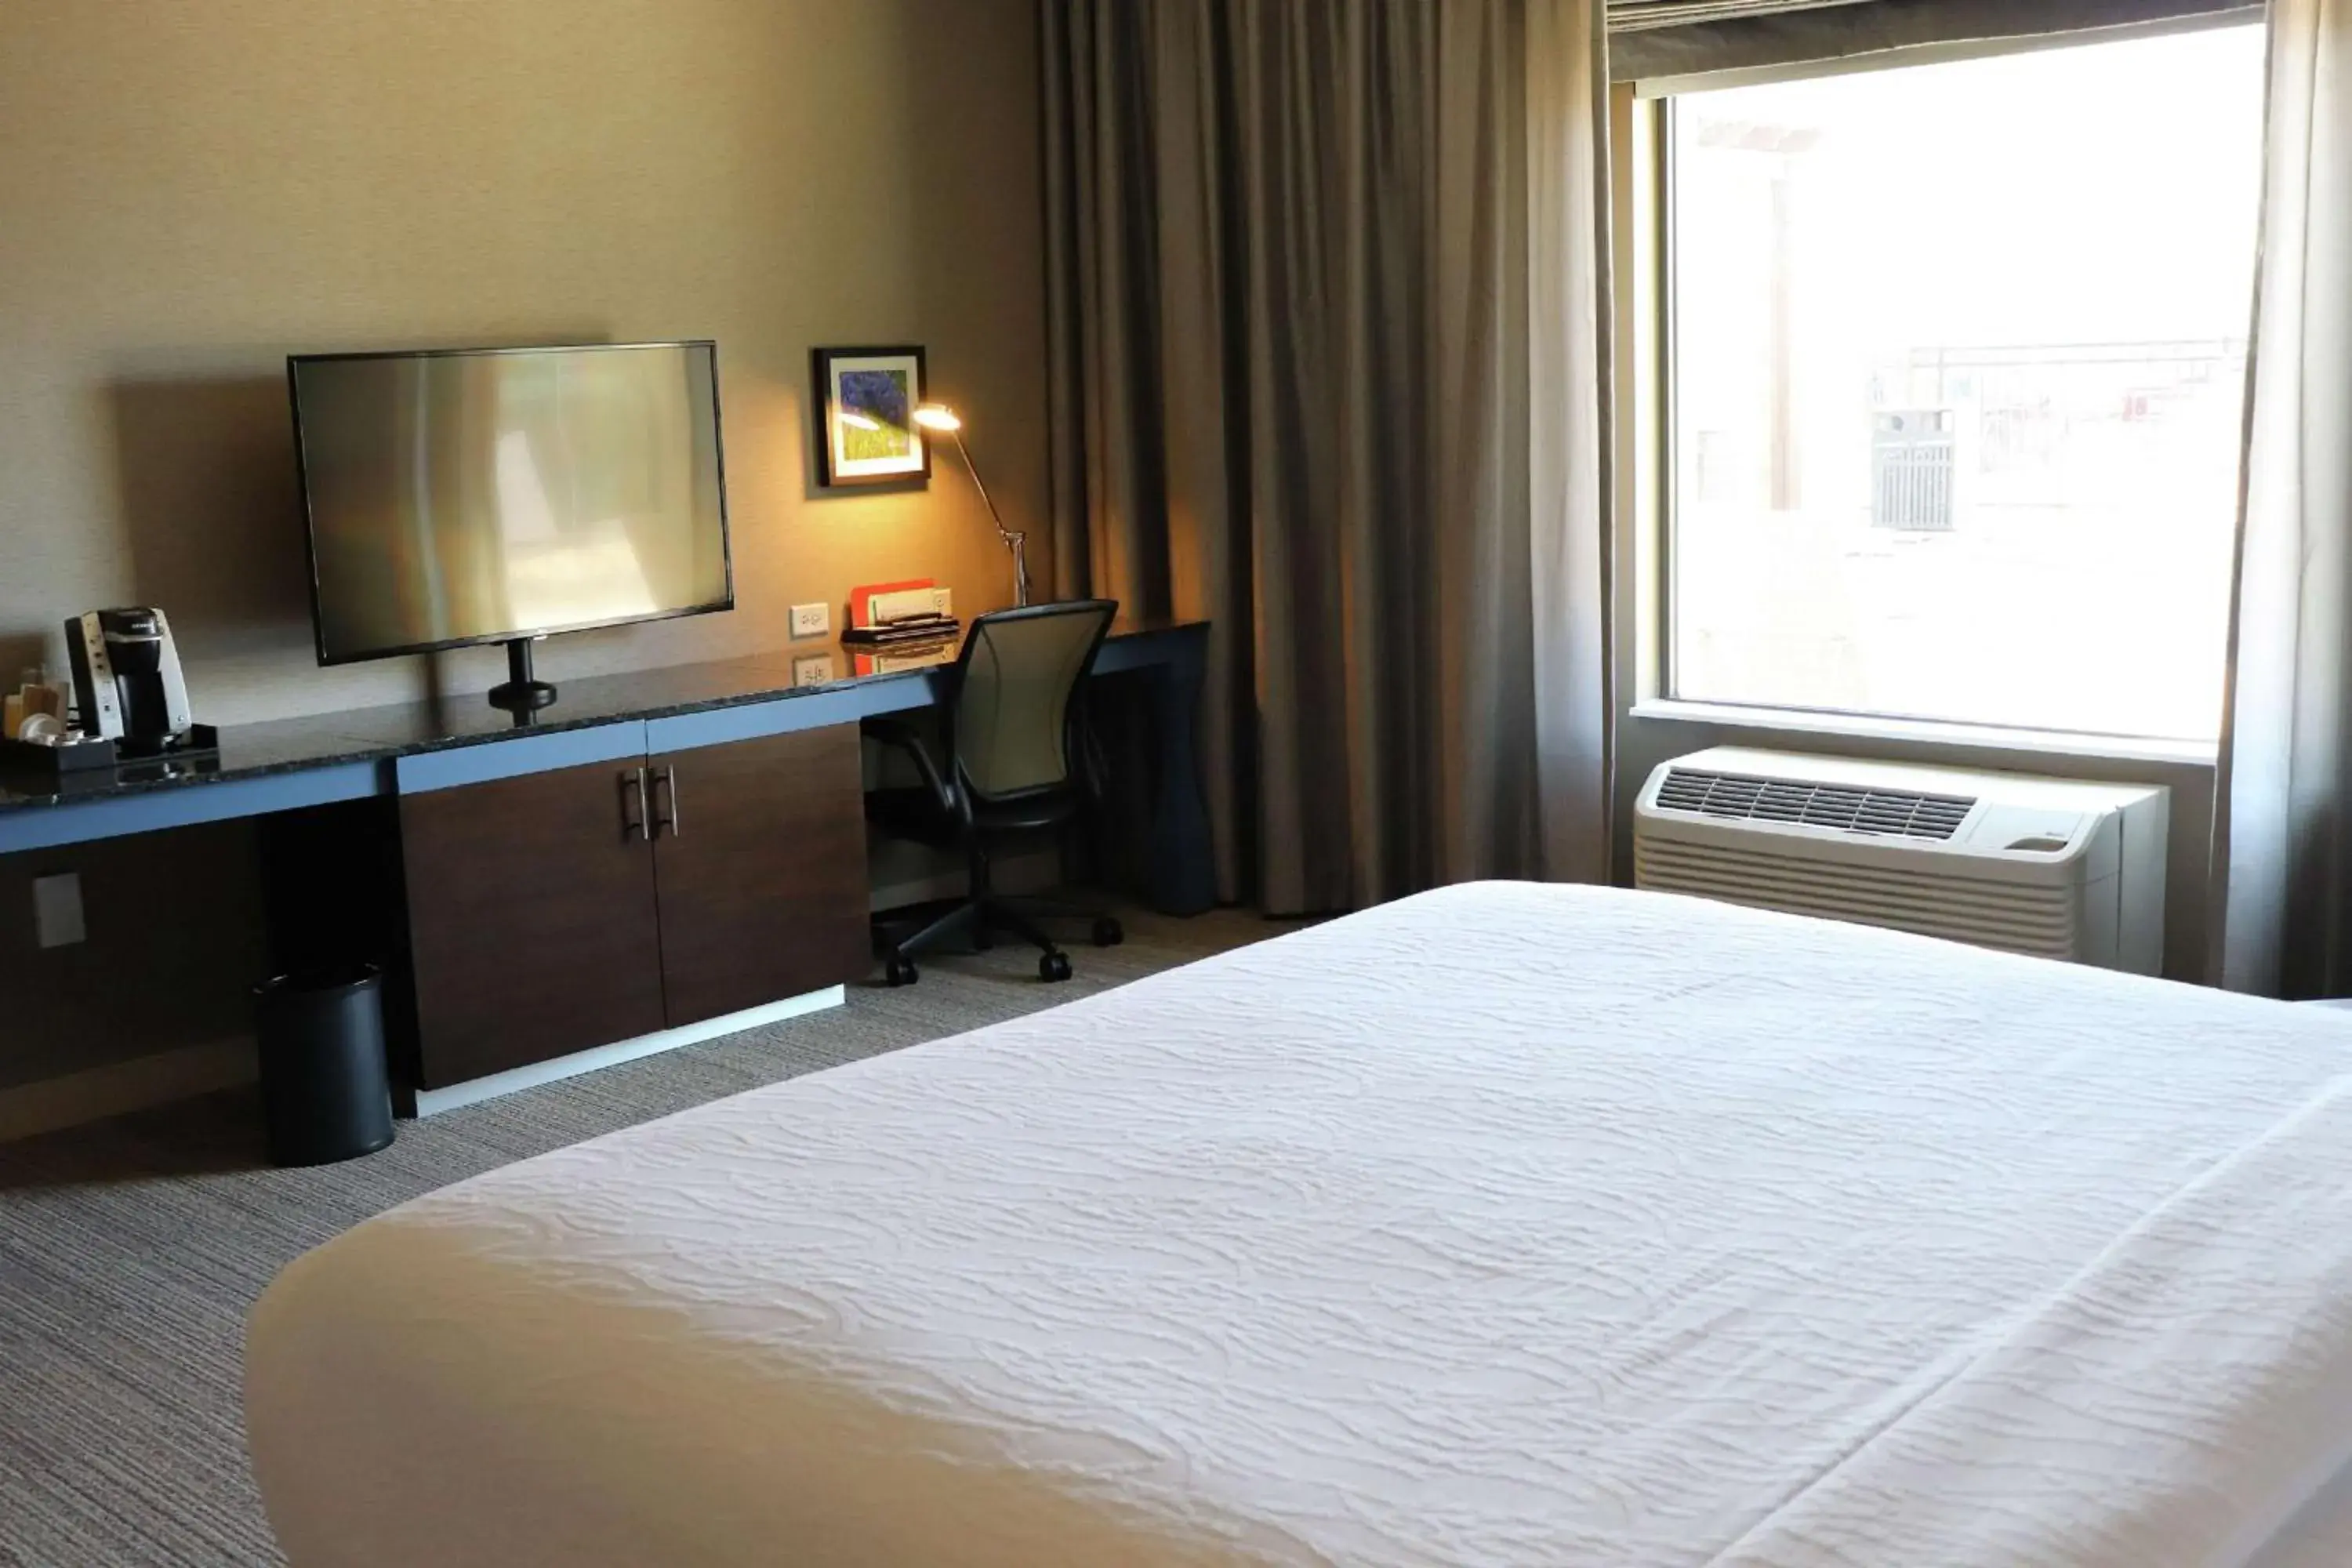 Bedroom, TV/Entertainment Center in Hilton Garden Inn Austin Airport